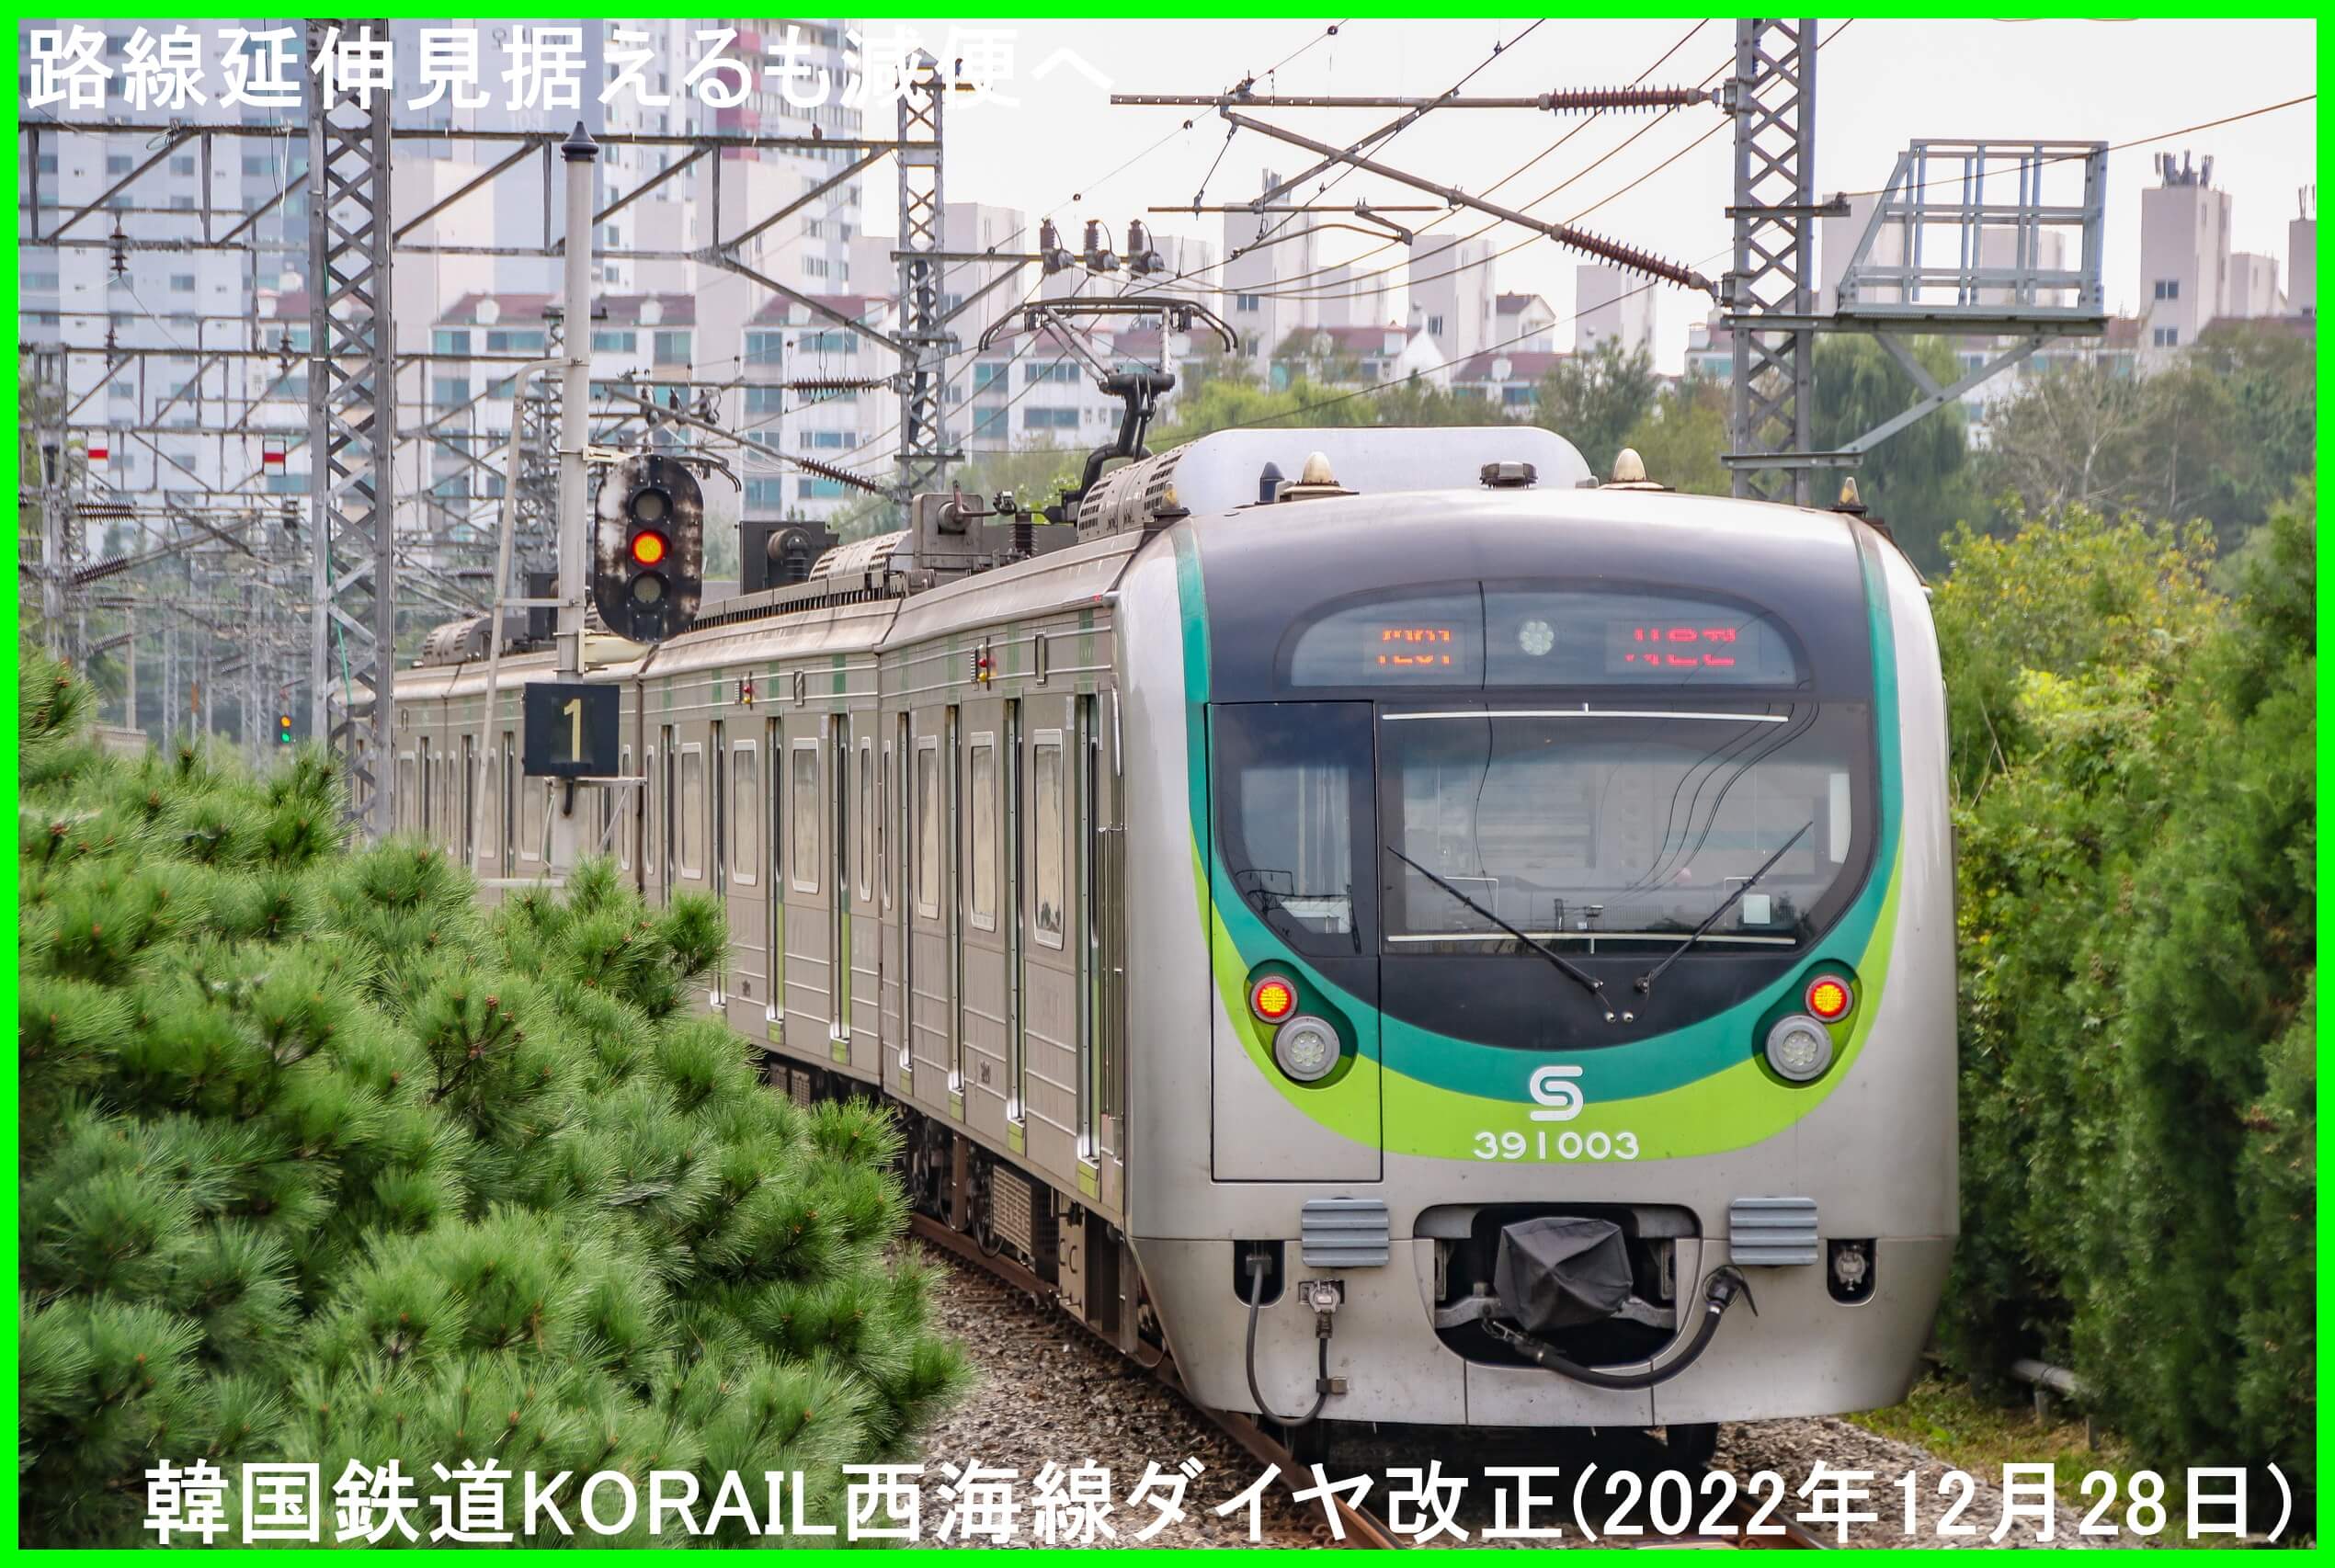 路線延伸見据えるも減便へ　韓国鉄道KORAIL西海線ダイヤ改正(2022年12月28日)